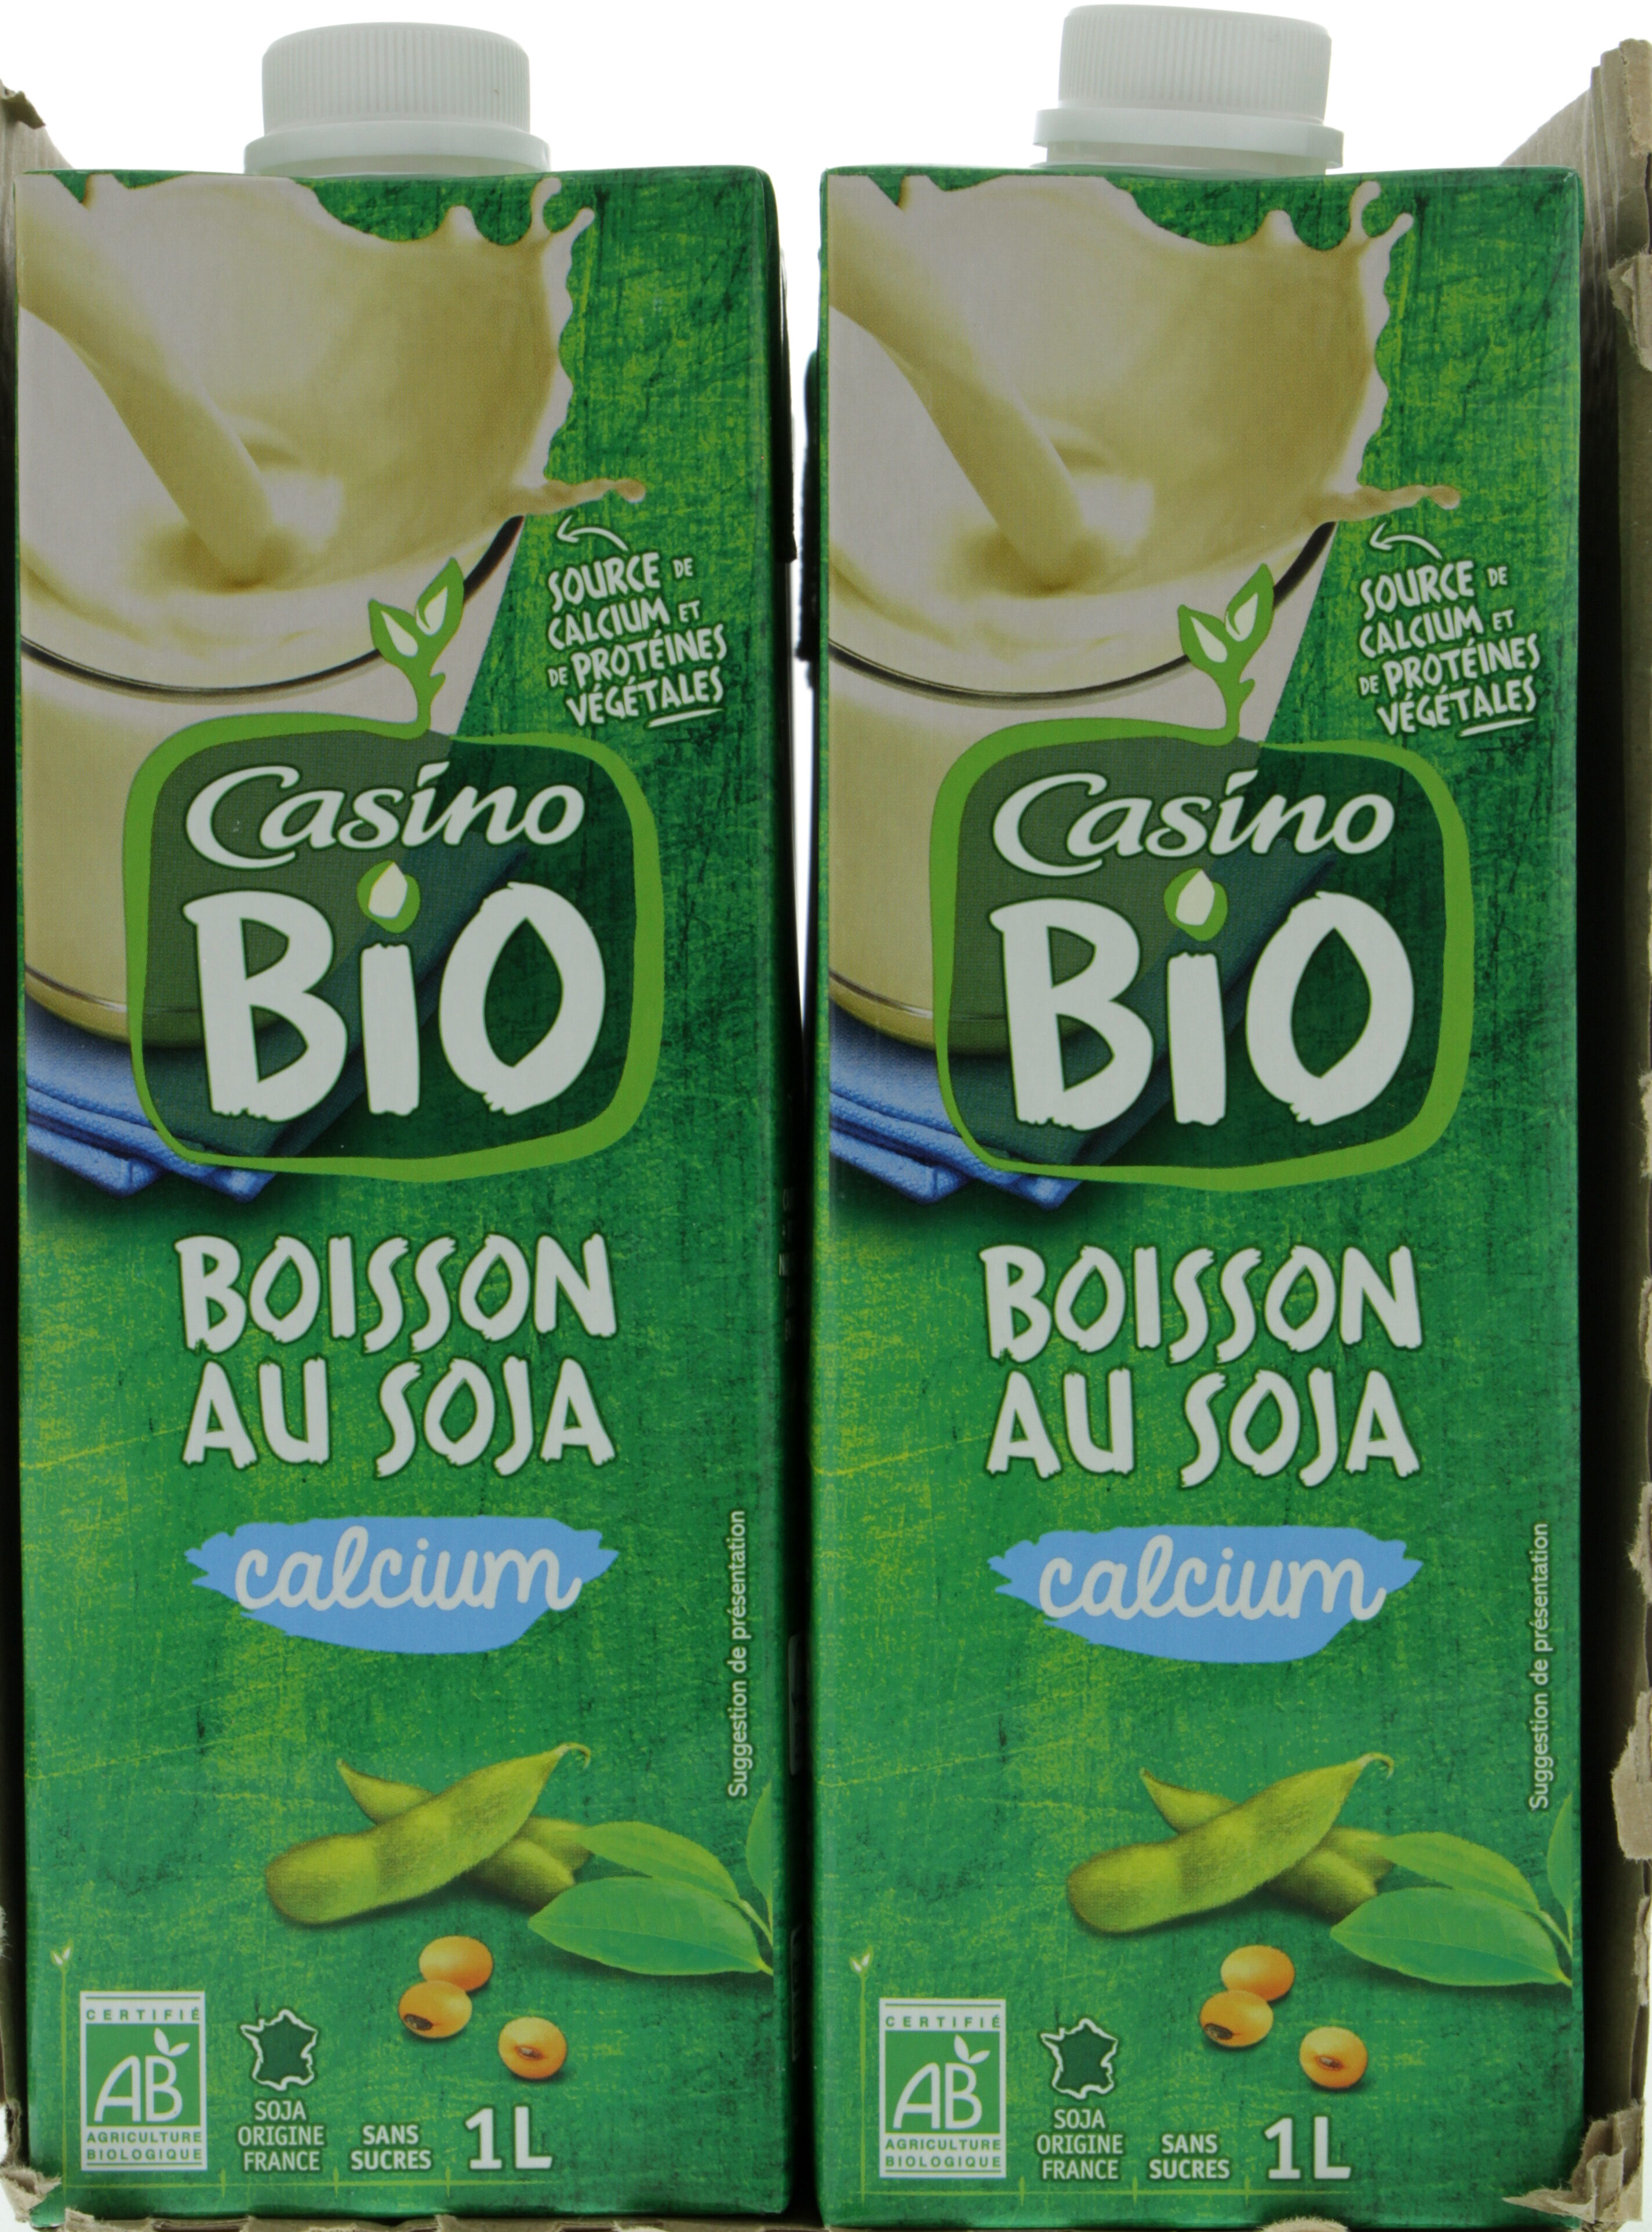 Boisson au soja calcium BIO - Product - fr